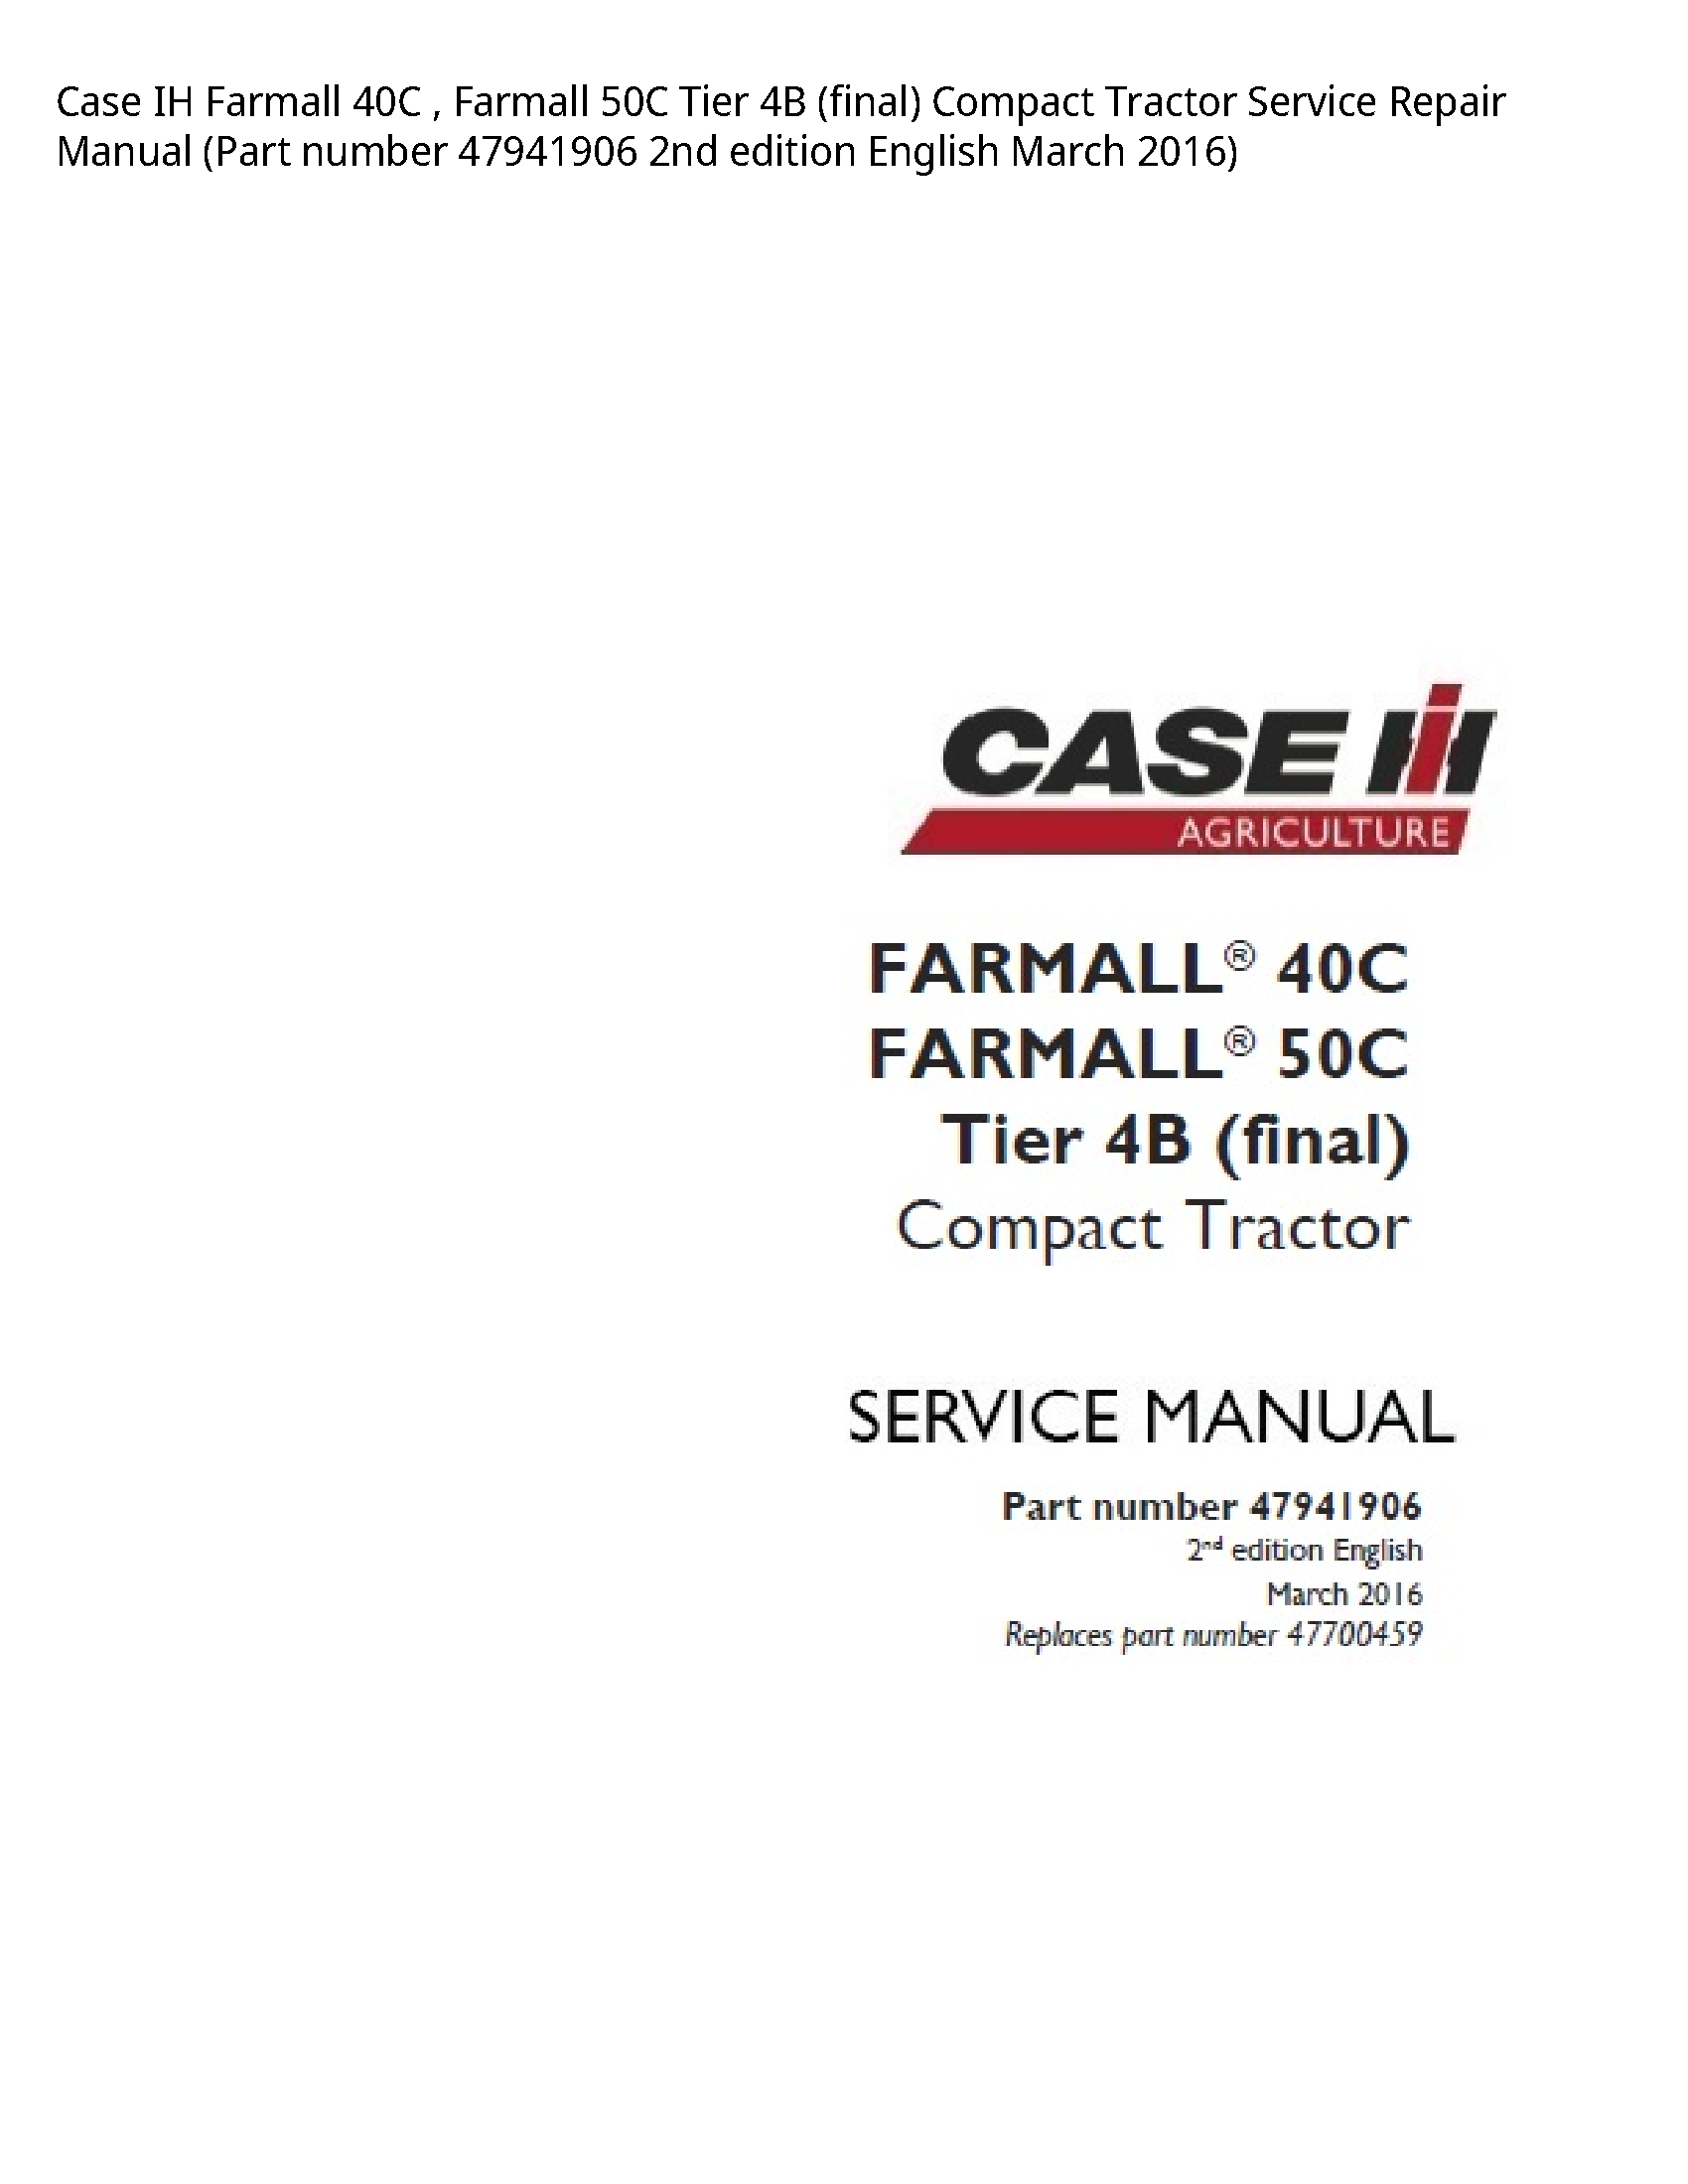 Case/Case IH 40C IH Farmall Farmall Tier (final) Compact Tractor manual